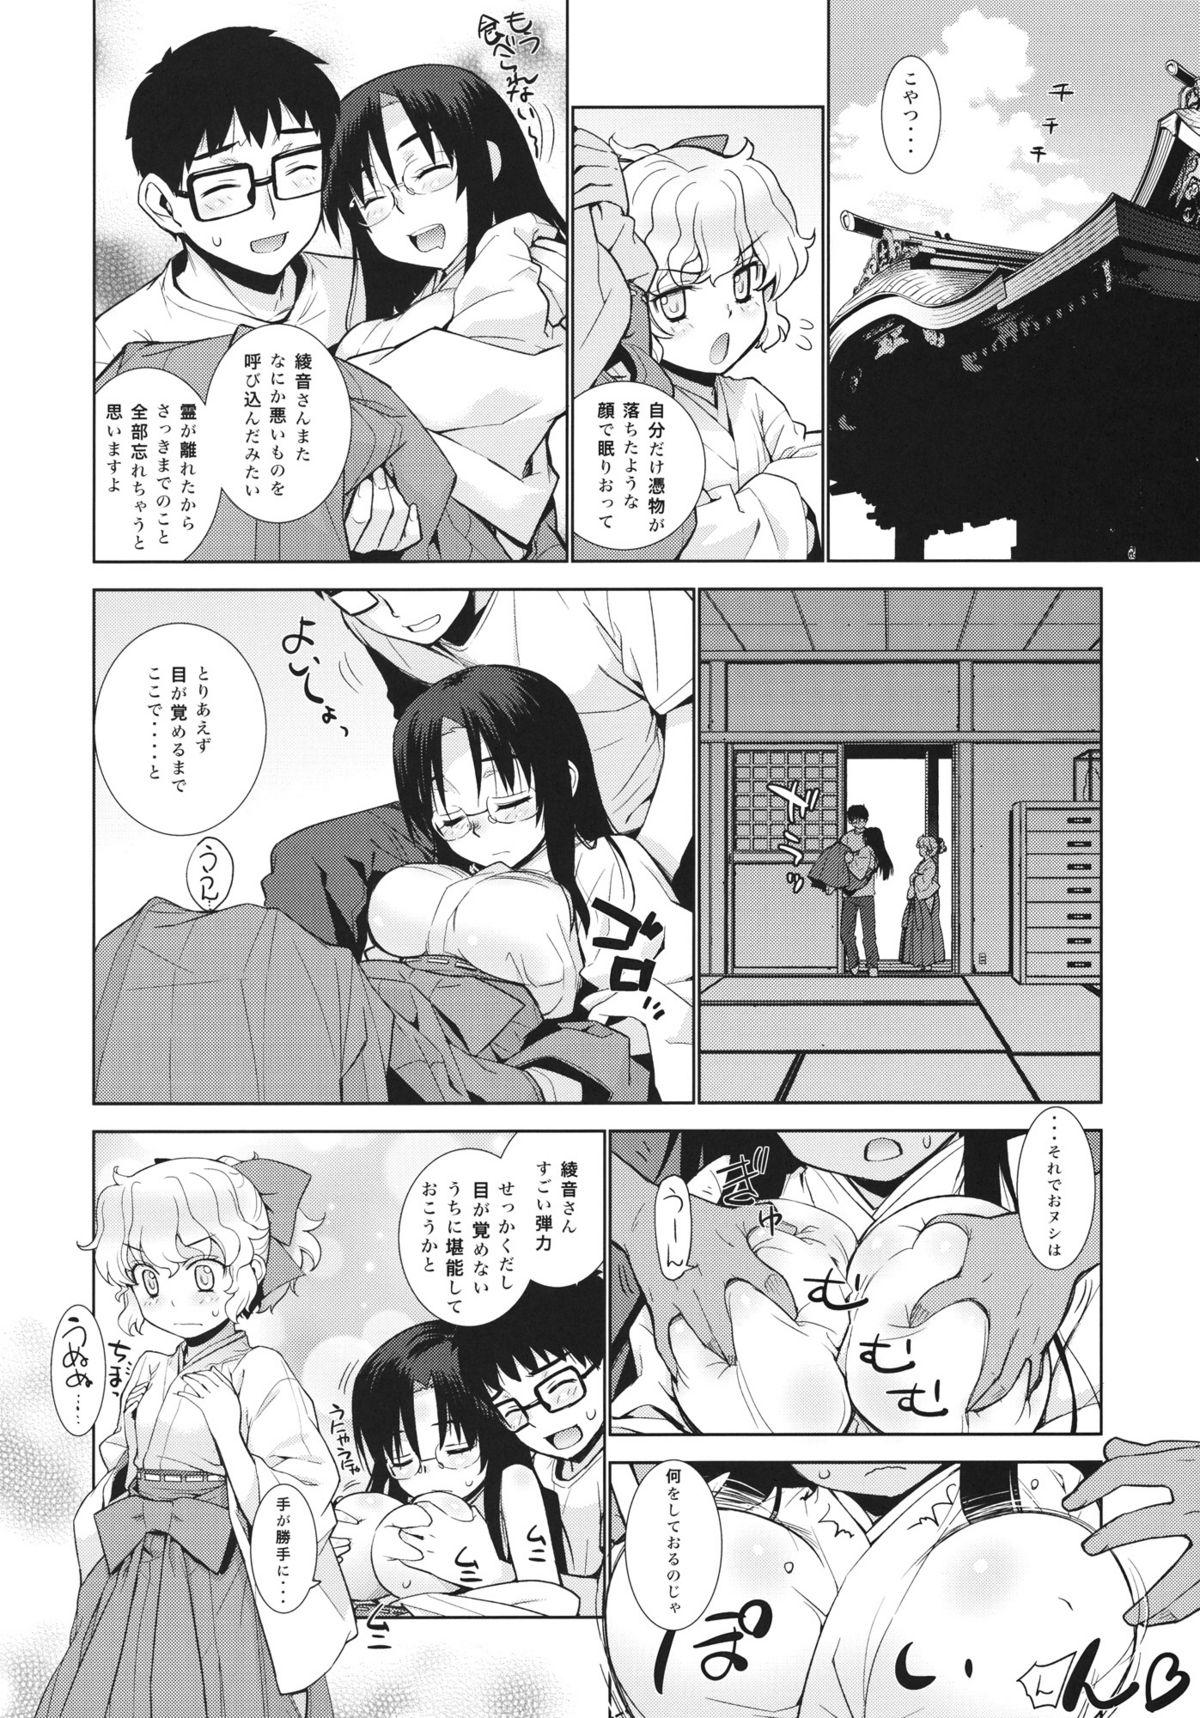 Milfporn Kanara-sama no Nichijou Nana - Tonari no miko-san wa minna warau Porra - Page 6